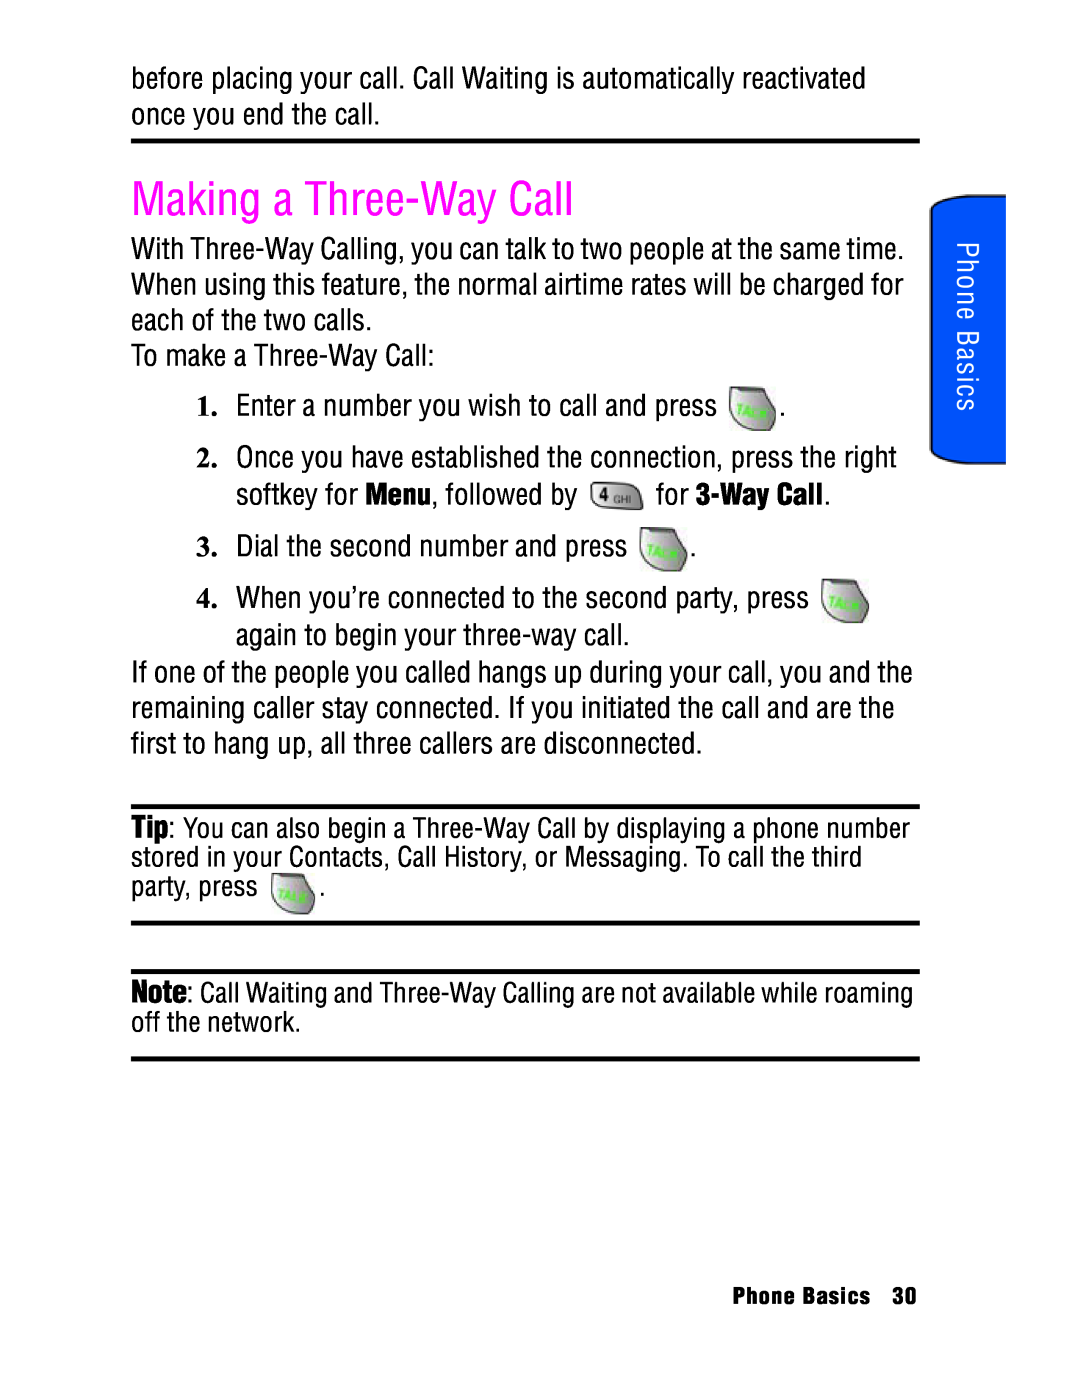 Samsung SPH-a740 manual Making a Three-Way Call, Phone Basics 